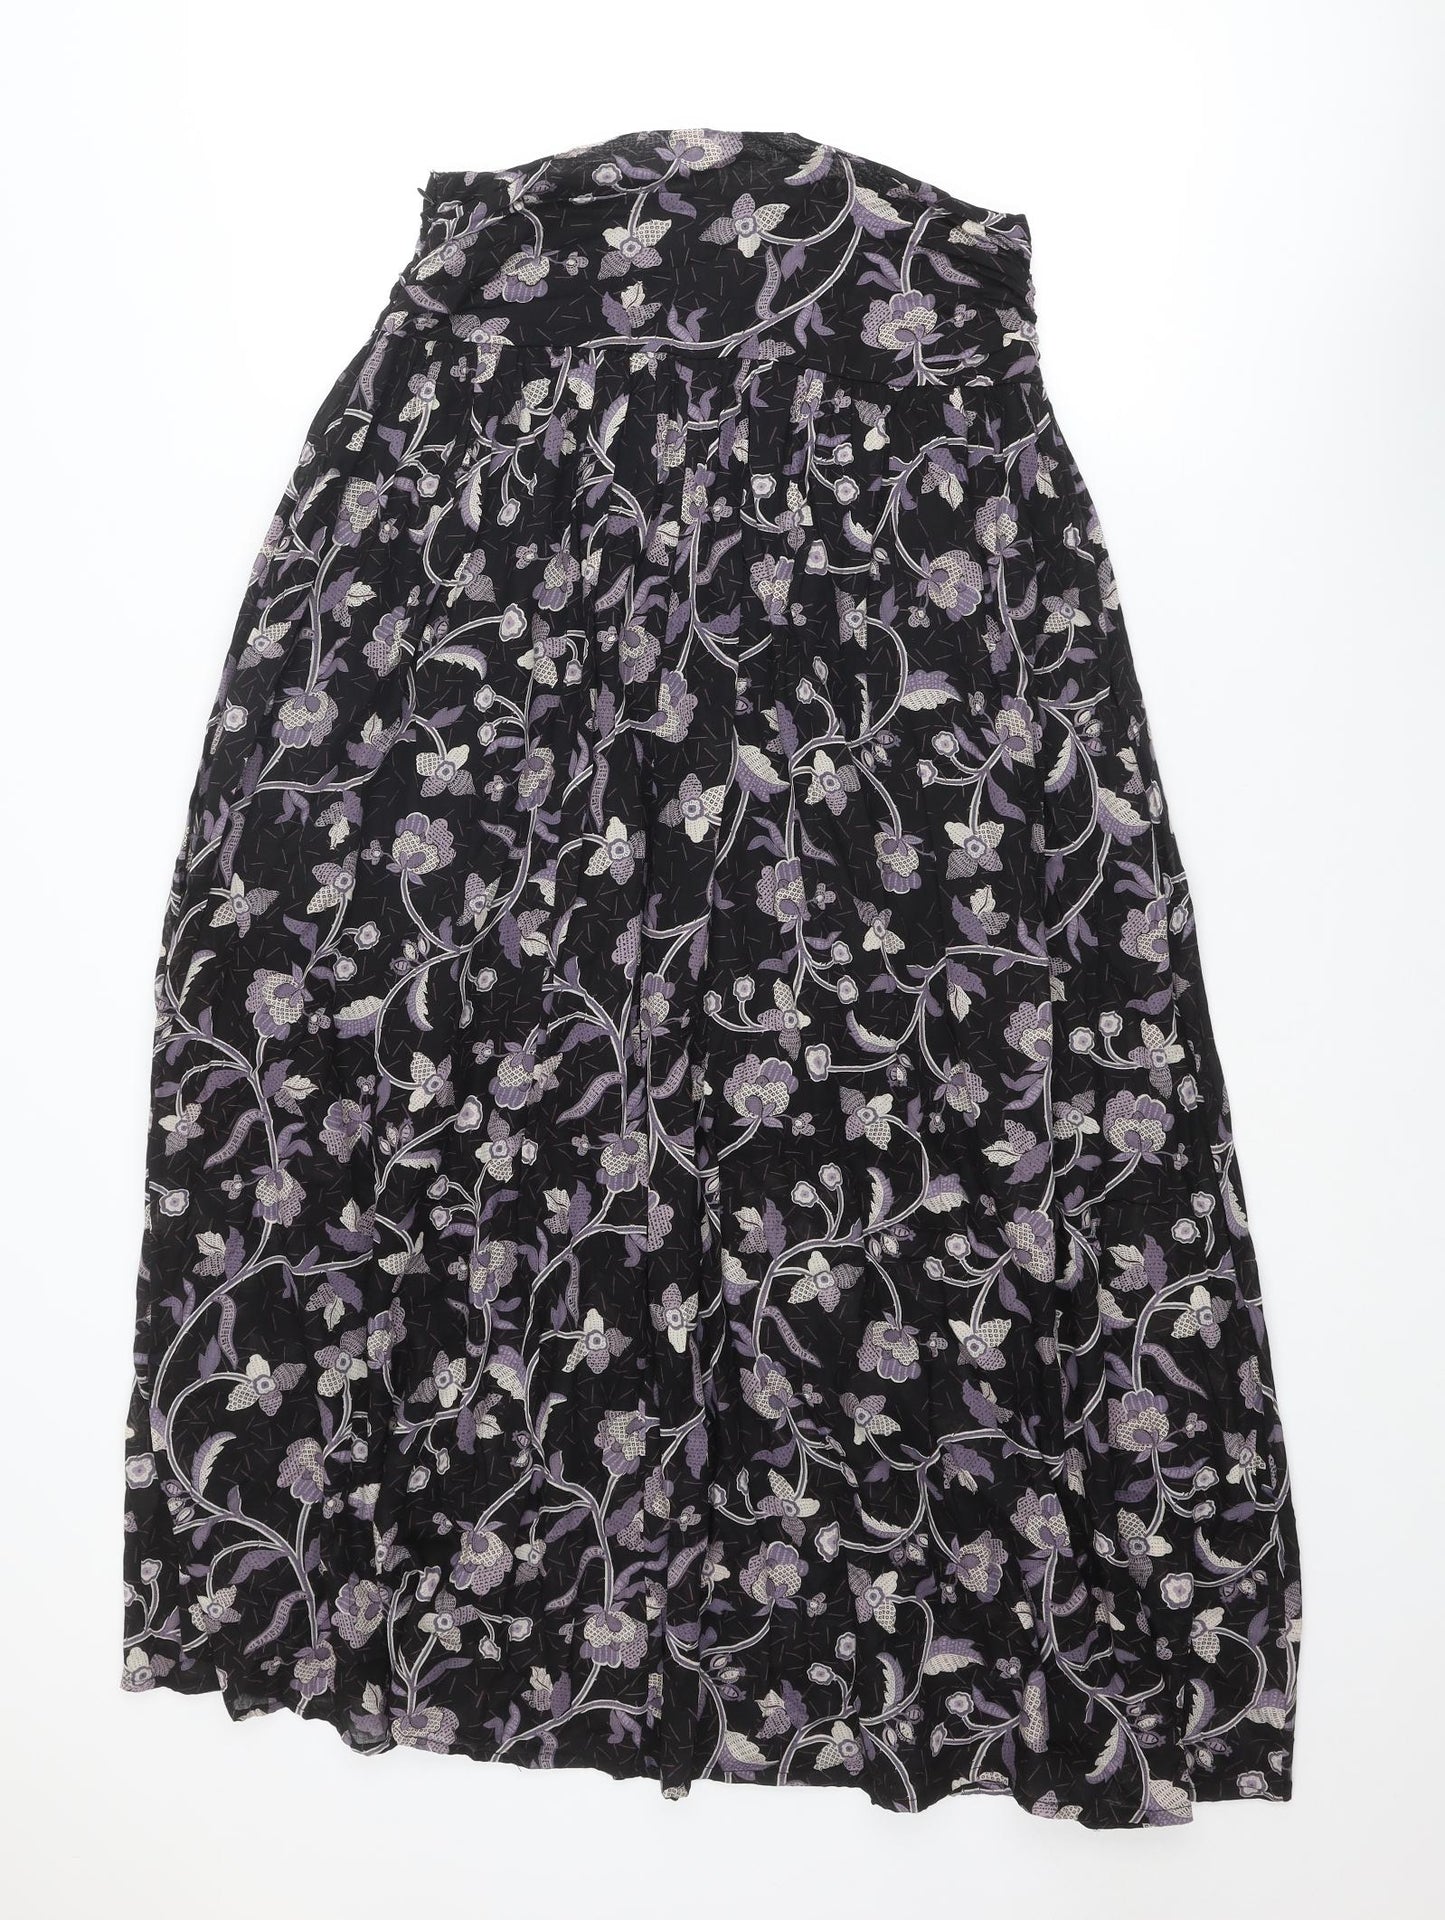 NEXT Womens Black Floral Cotton Peasant Skirt Size 10 Zip